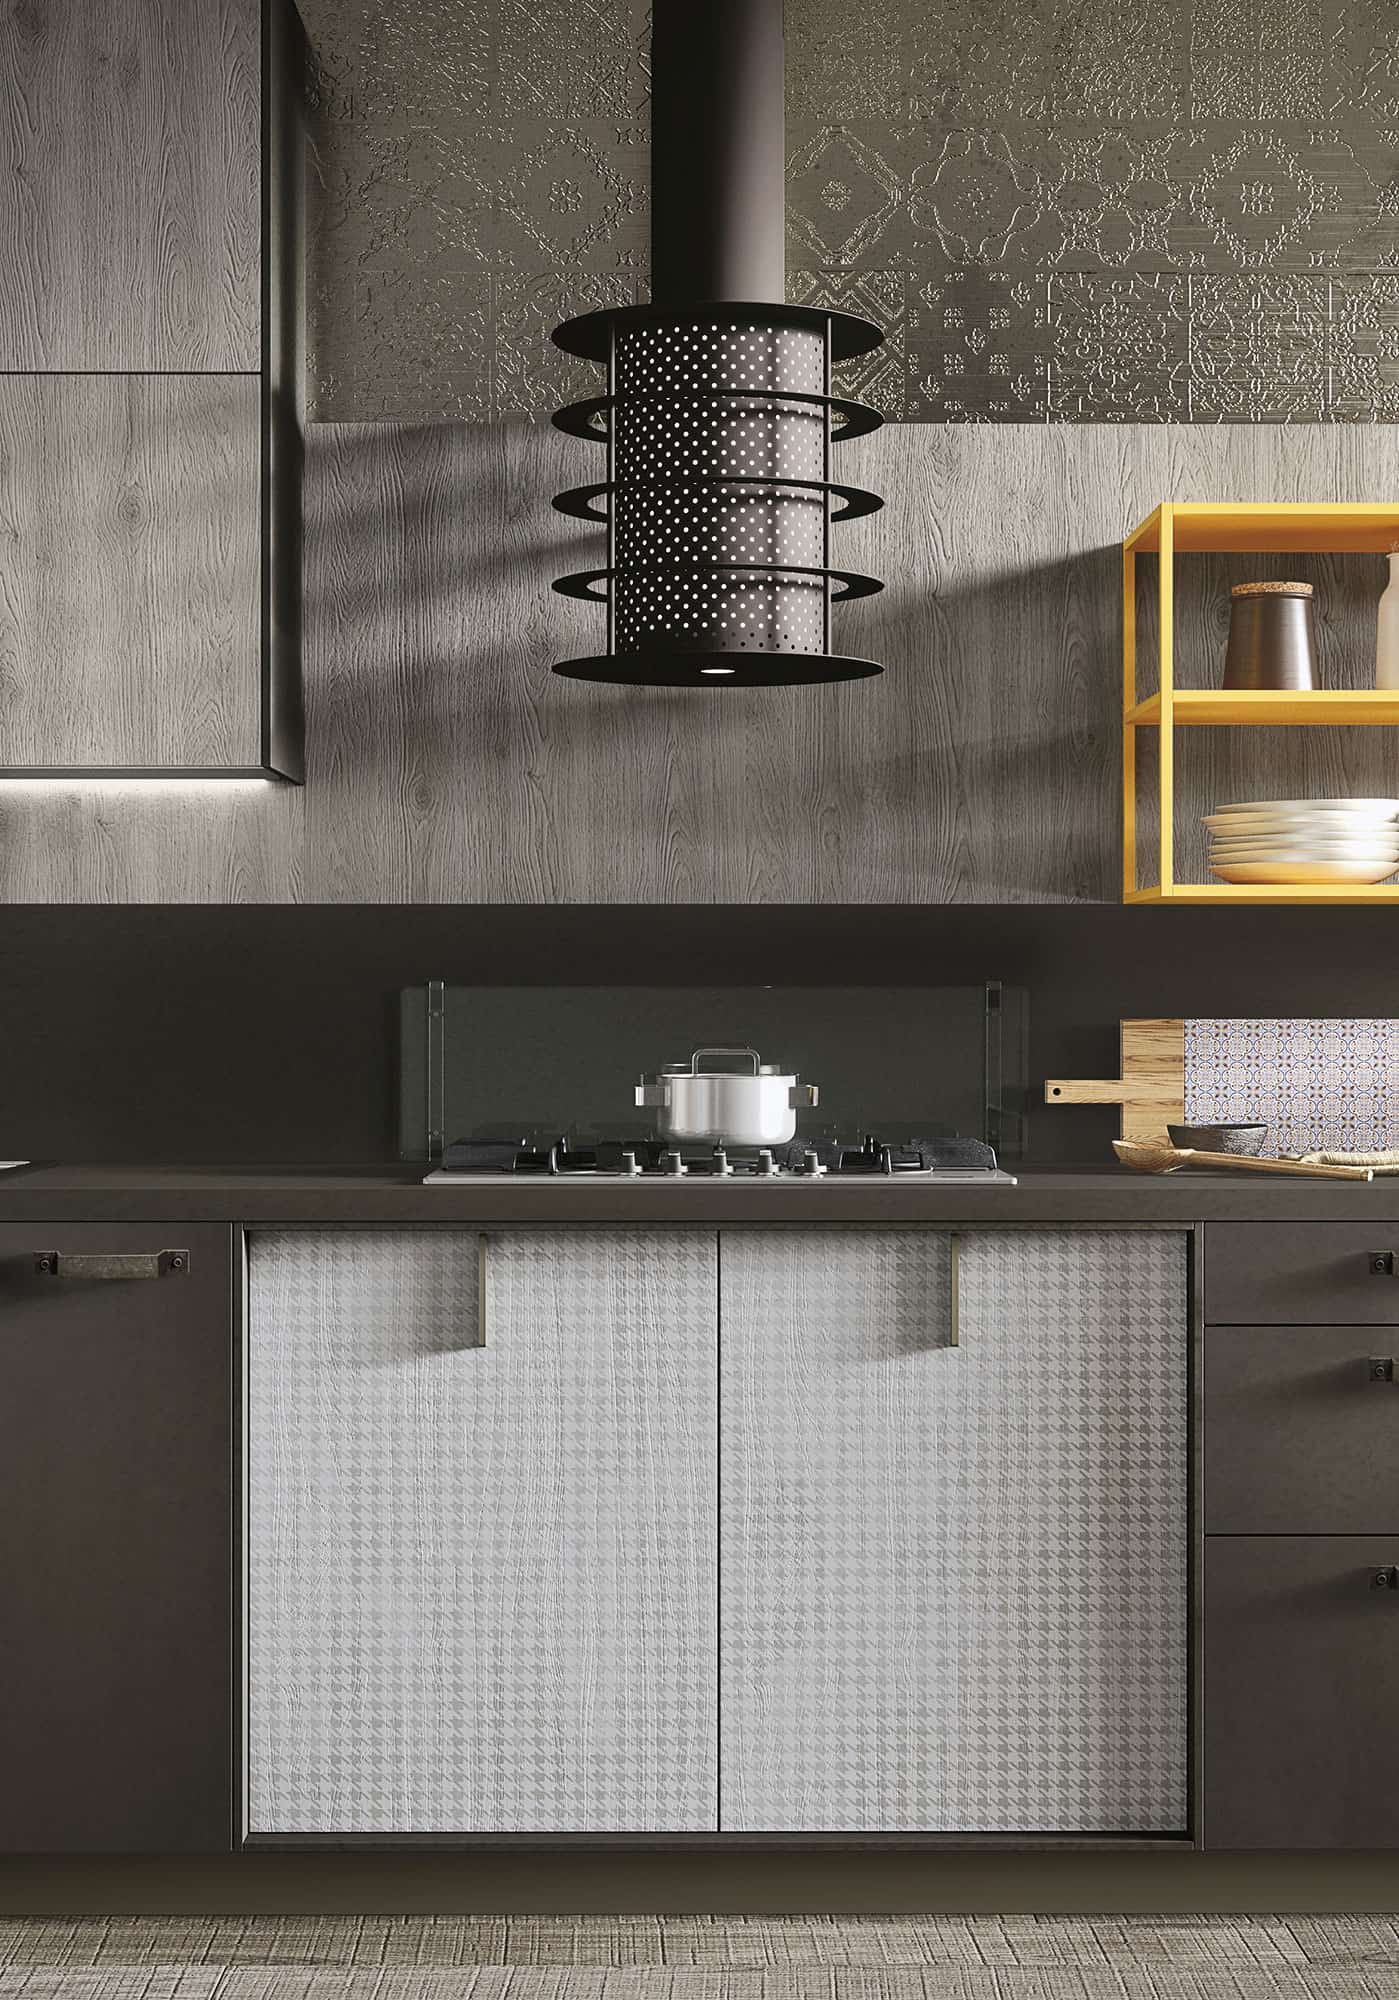 23 kitchen design lofts 3 urban ideas snaidero